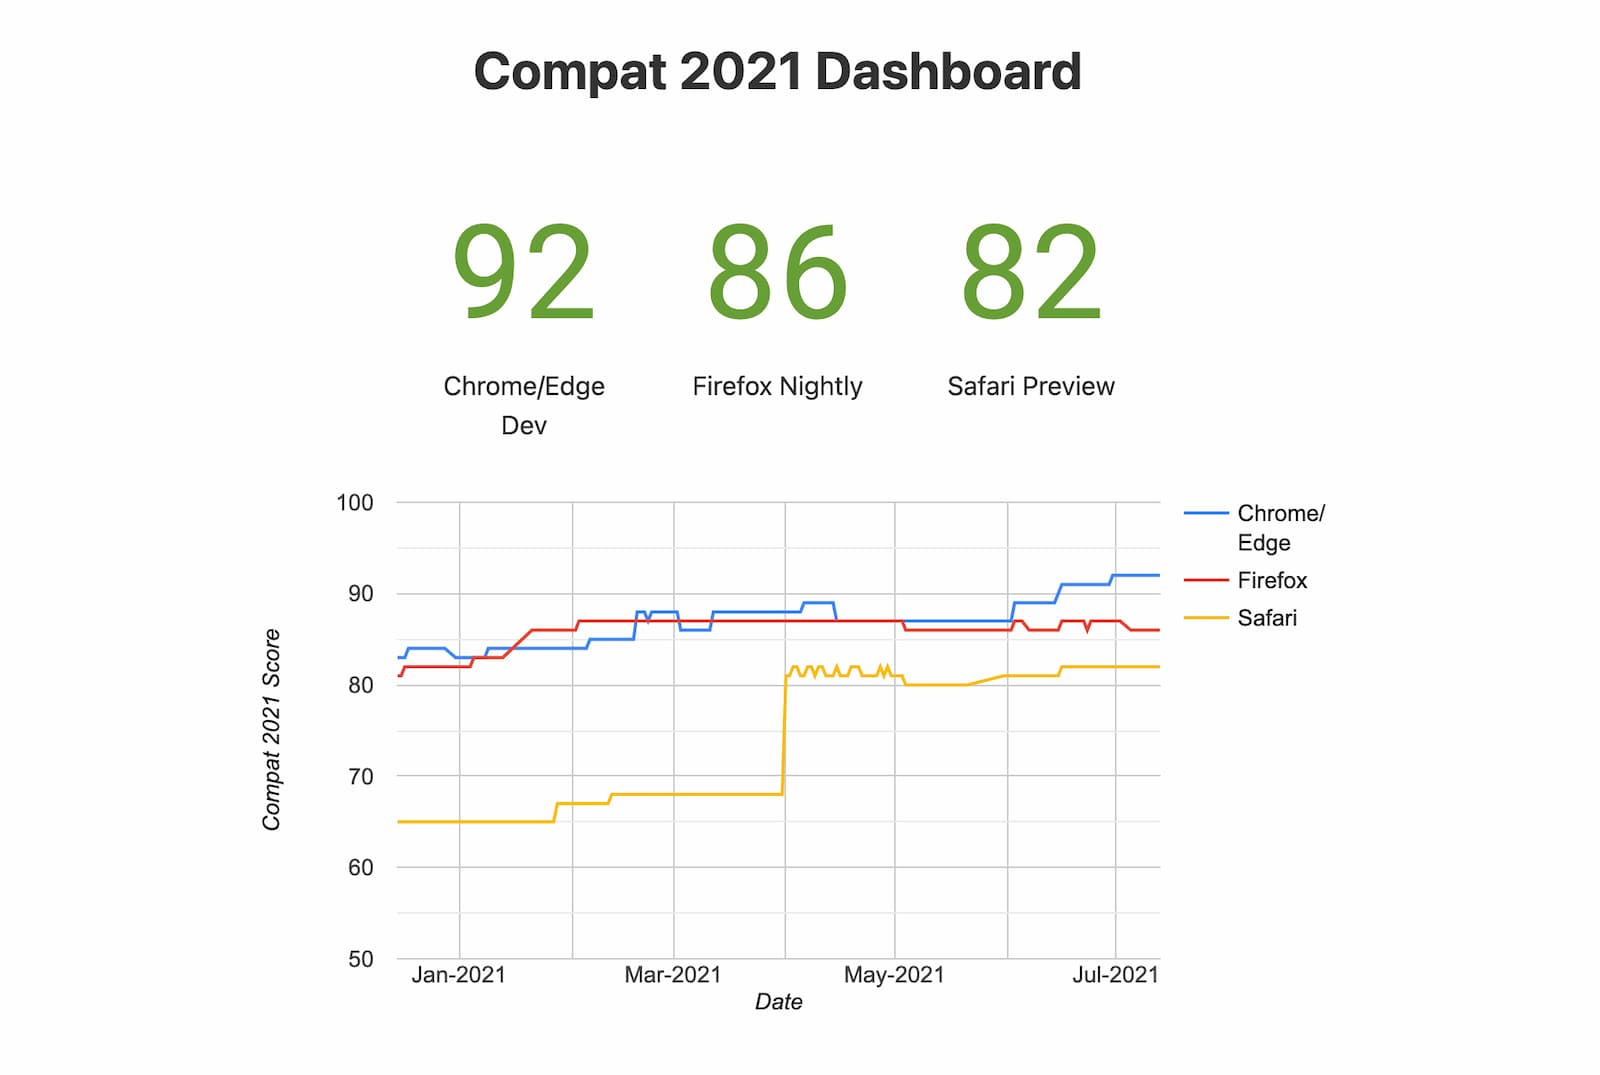 說明文字：Compat 2021 資訊主頁的數據匯報 (實驗性瀏覽器)